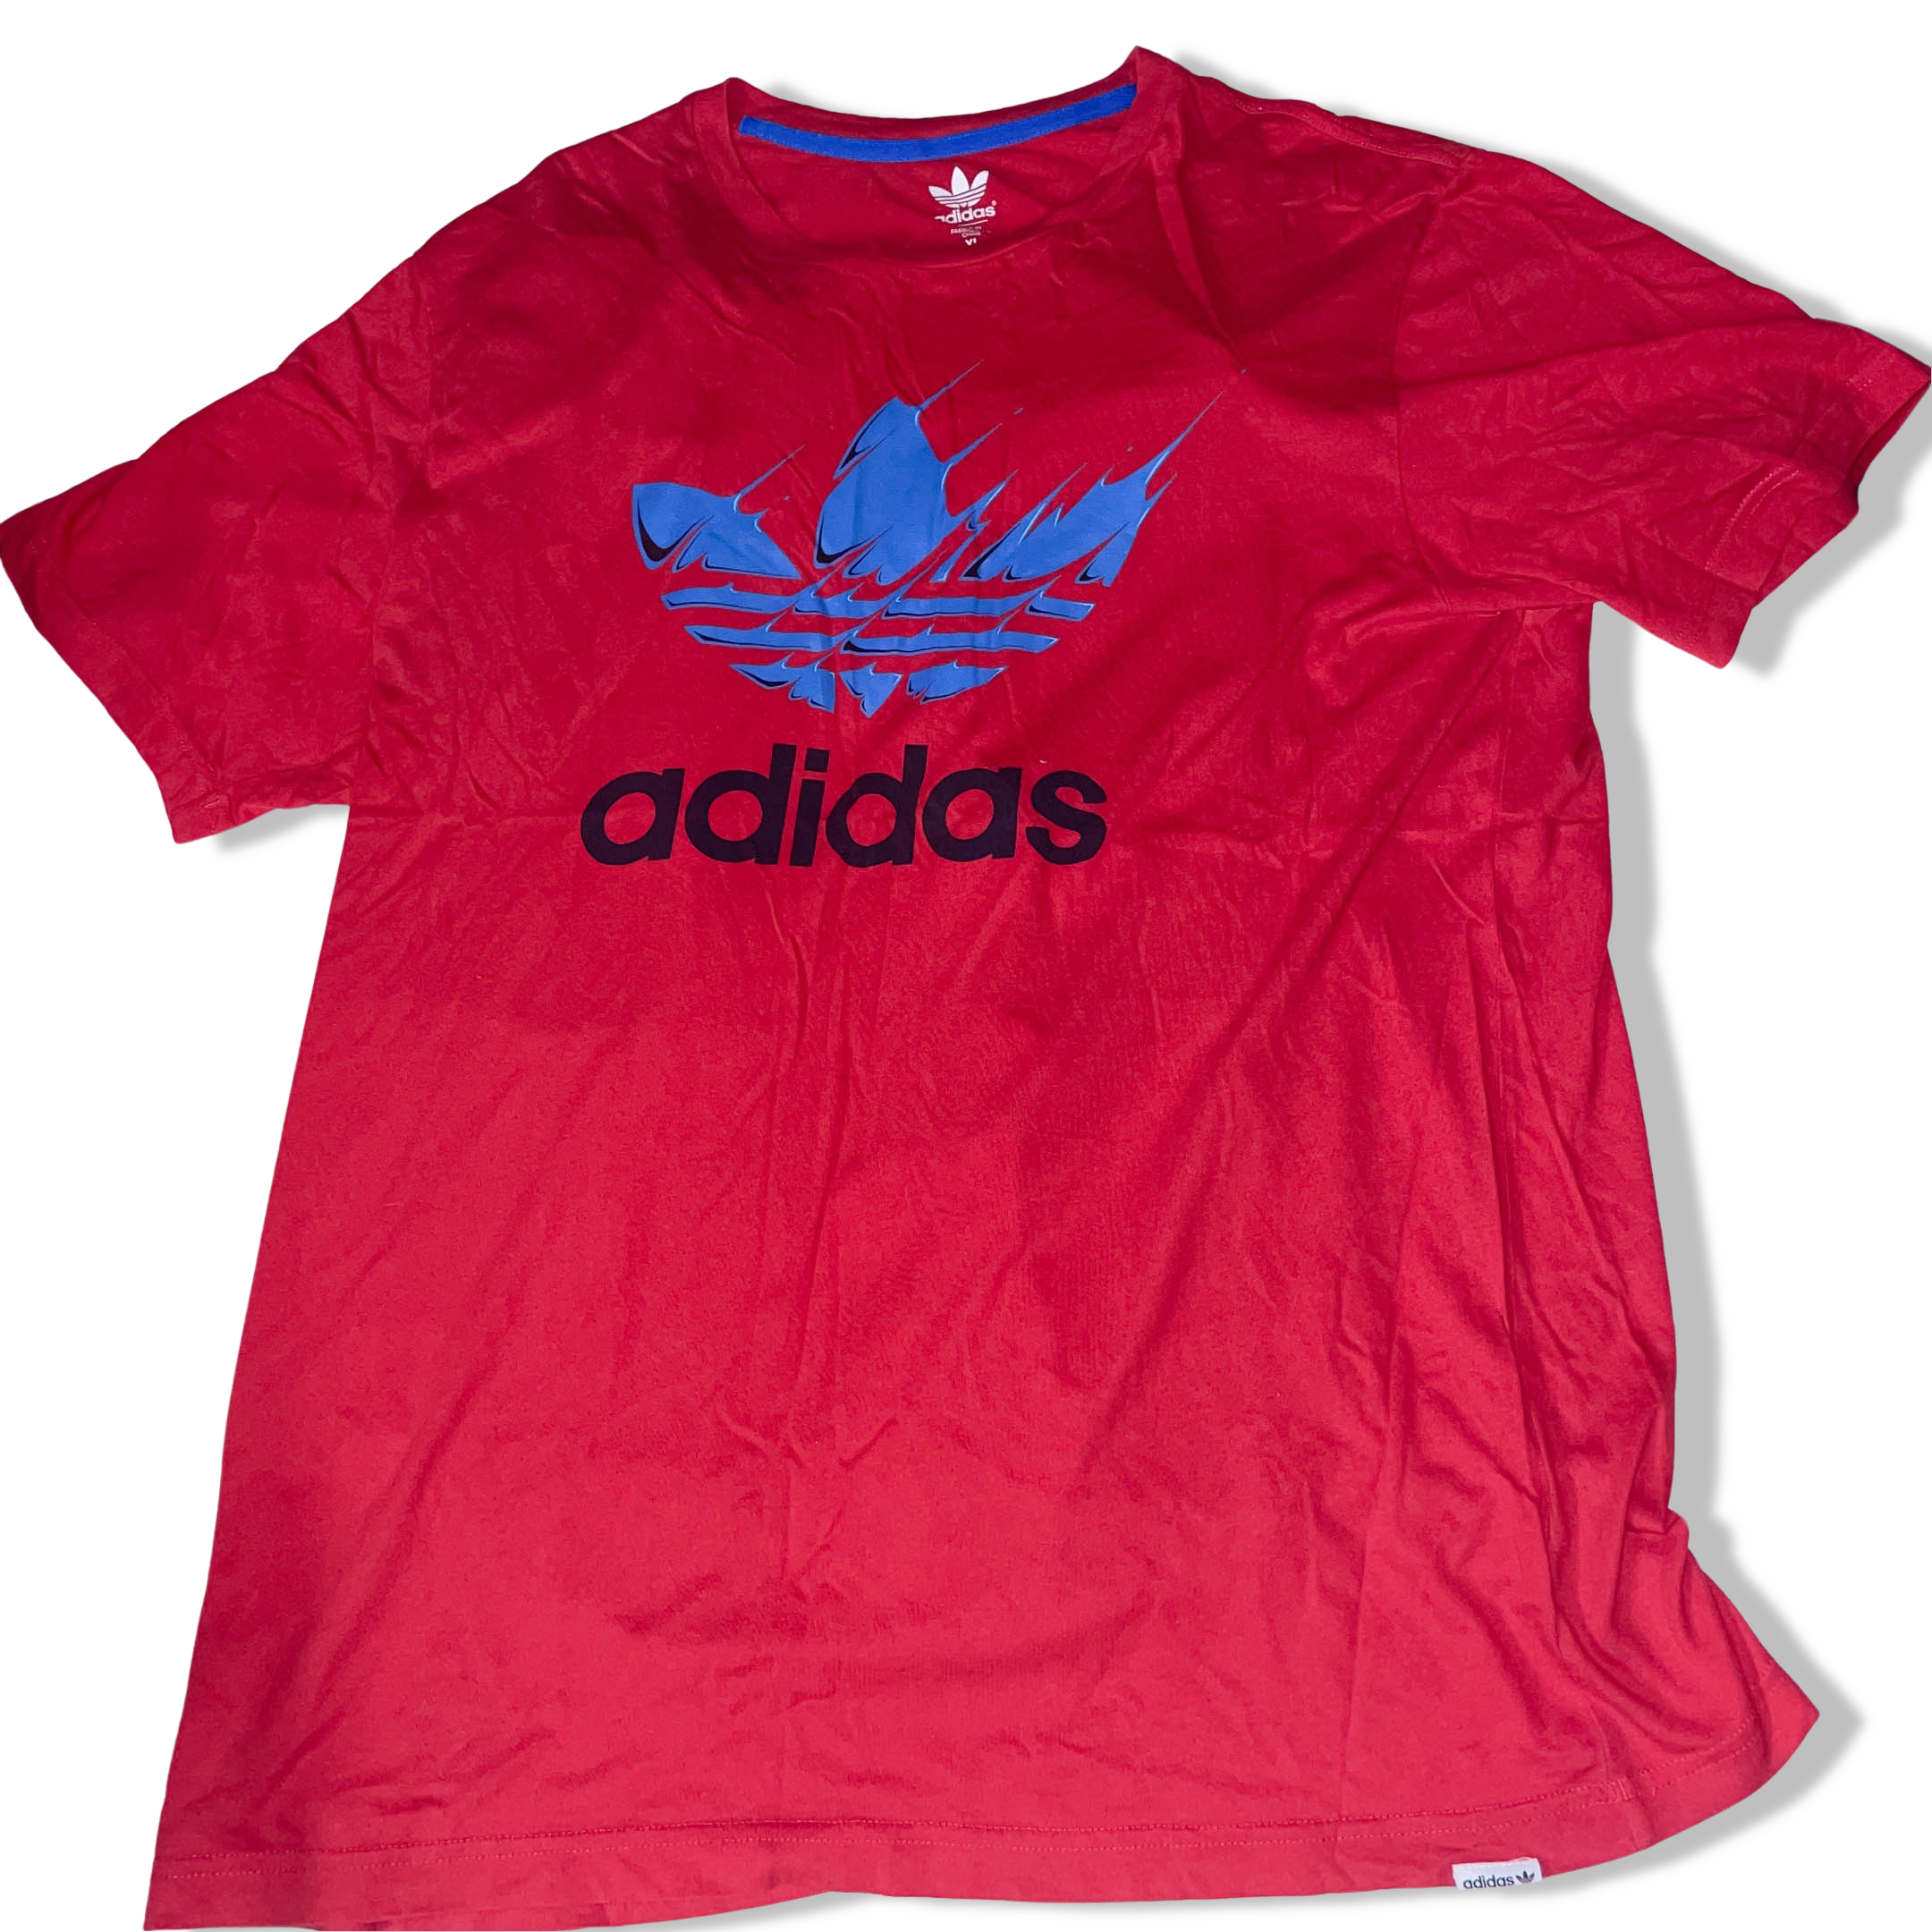 Vintage Men's Adidas Originals Trefoil T-shirt Size XL Red